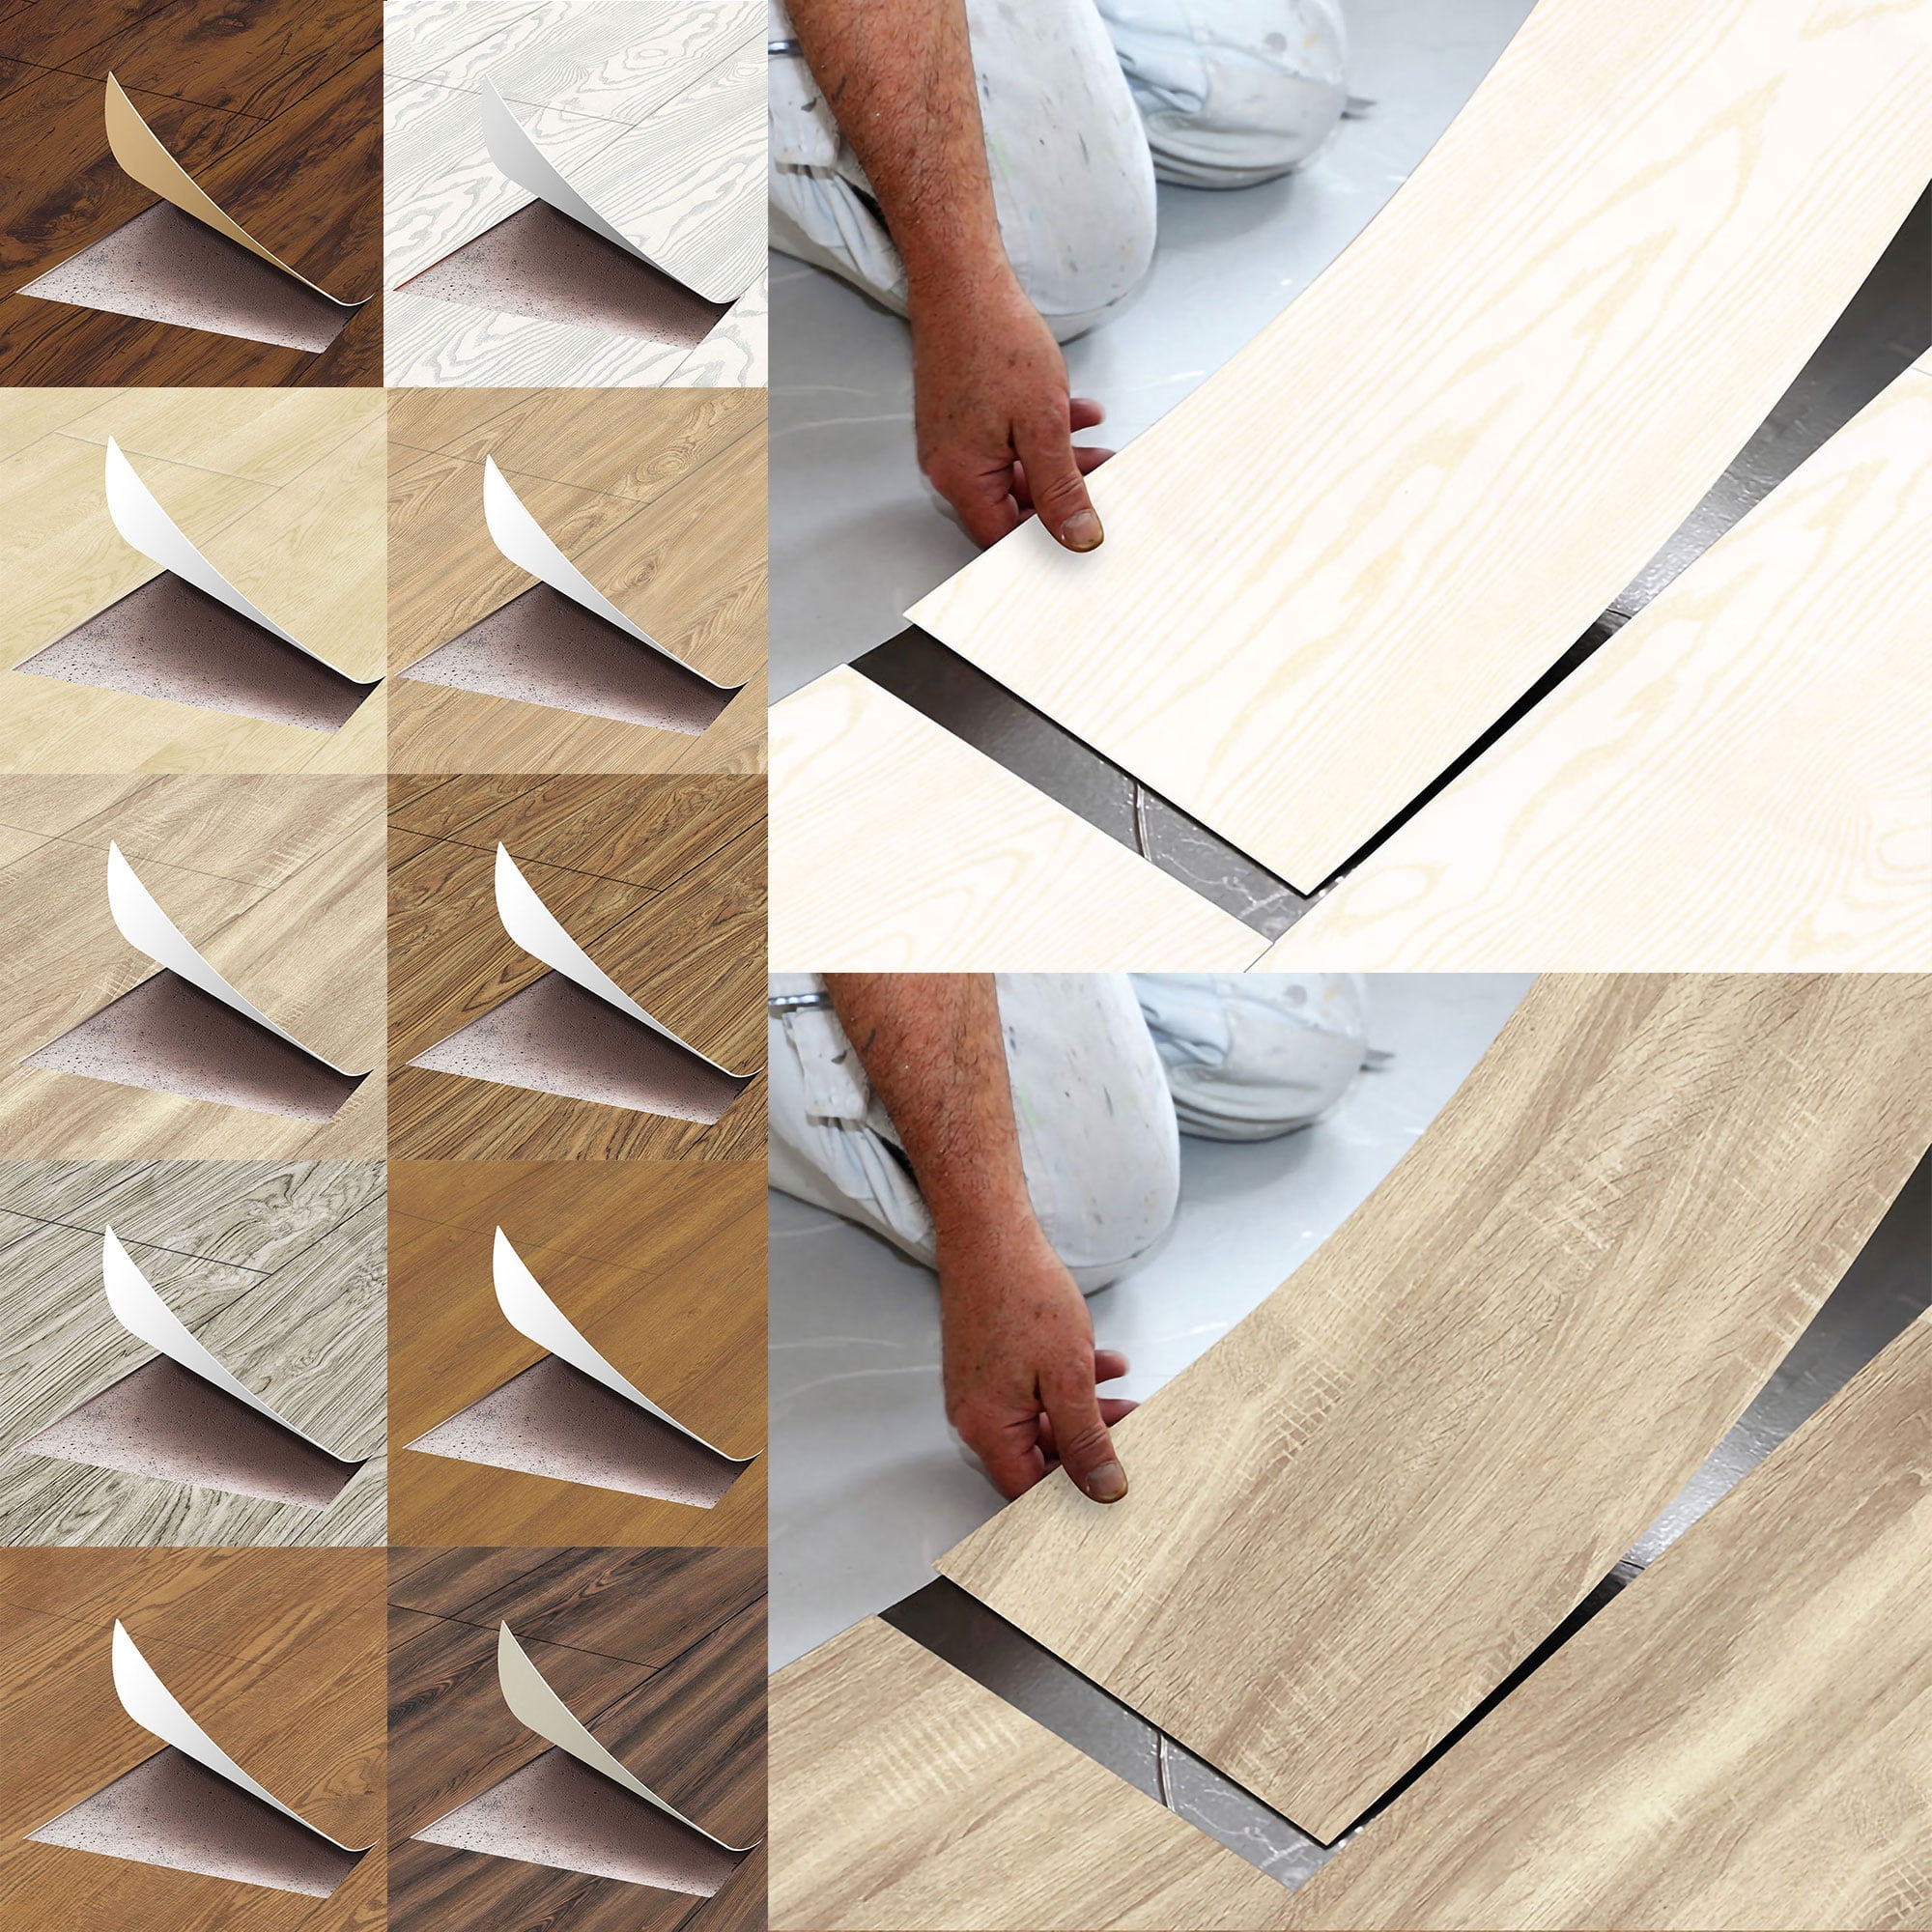 118 X7 87 Self Adhesive Vinyl Floor, Self Adhesive Wood Floor Tiles